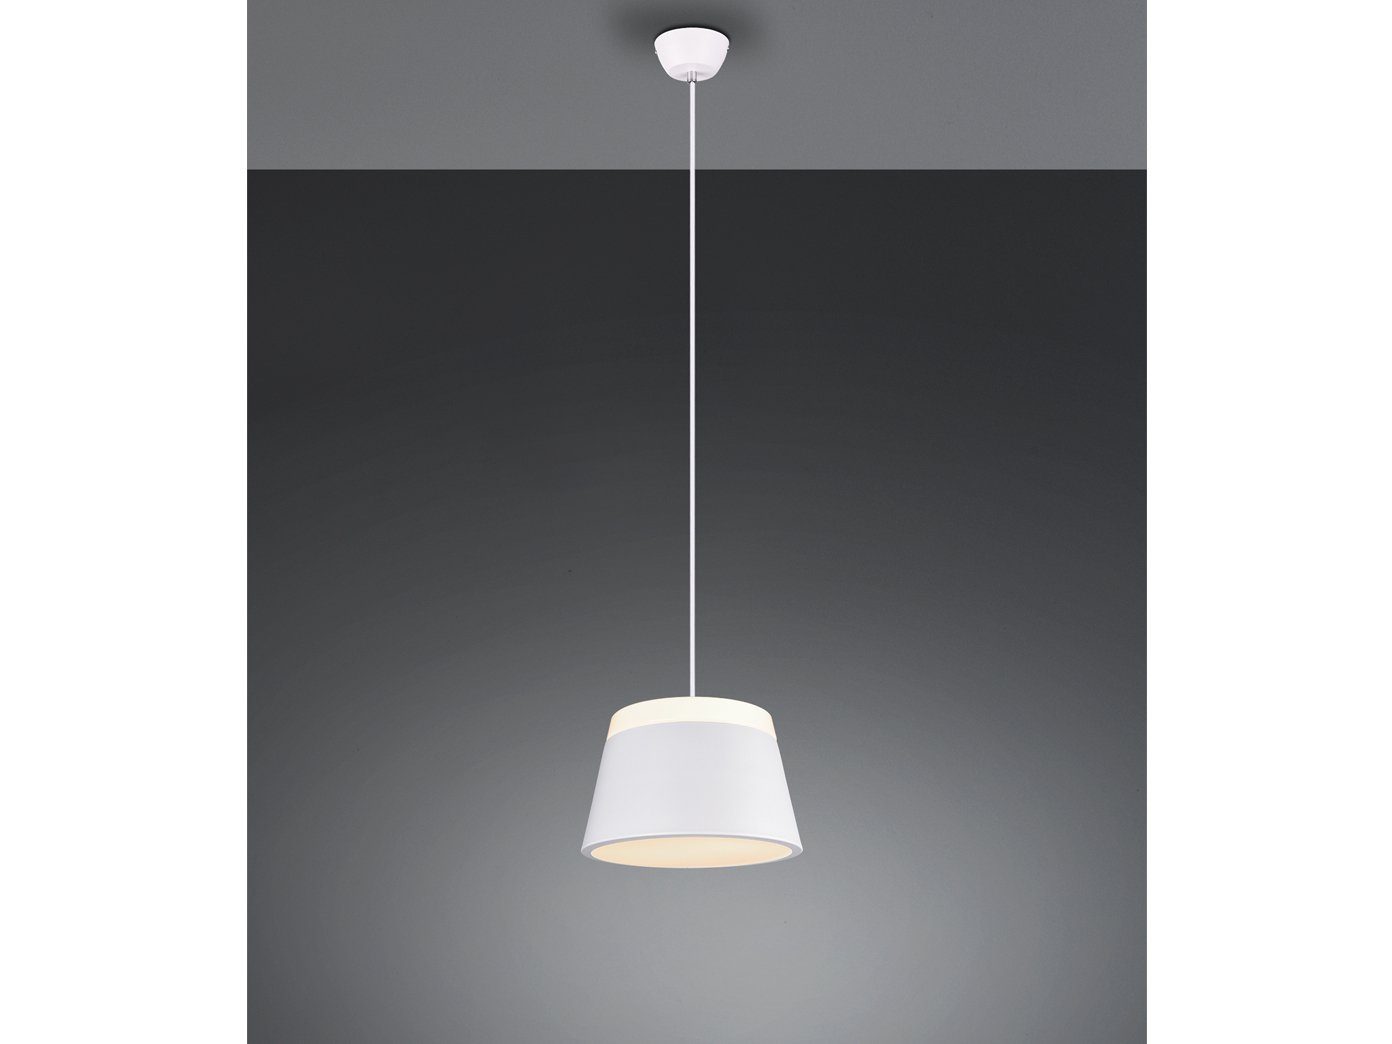 Wohnzimmerlampe Flurlampe Wohnraum LED Tischlampe modern 2 flammig Glas weiß 